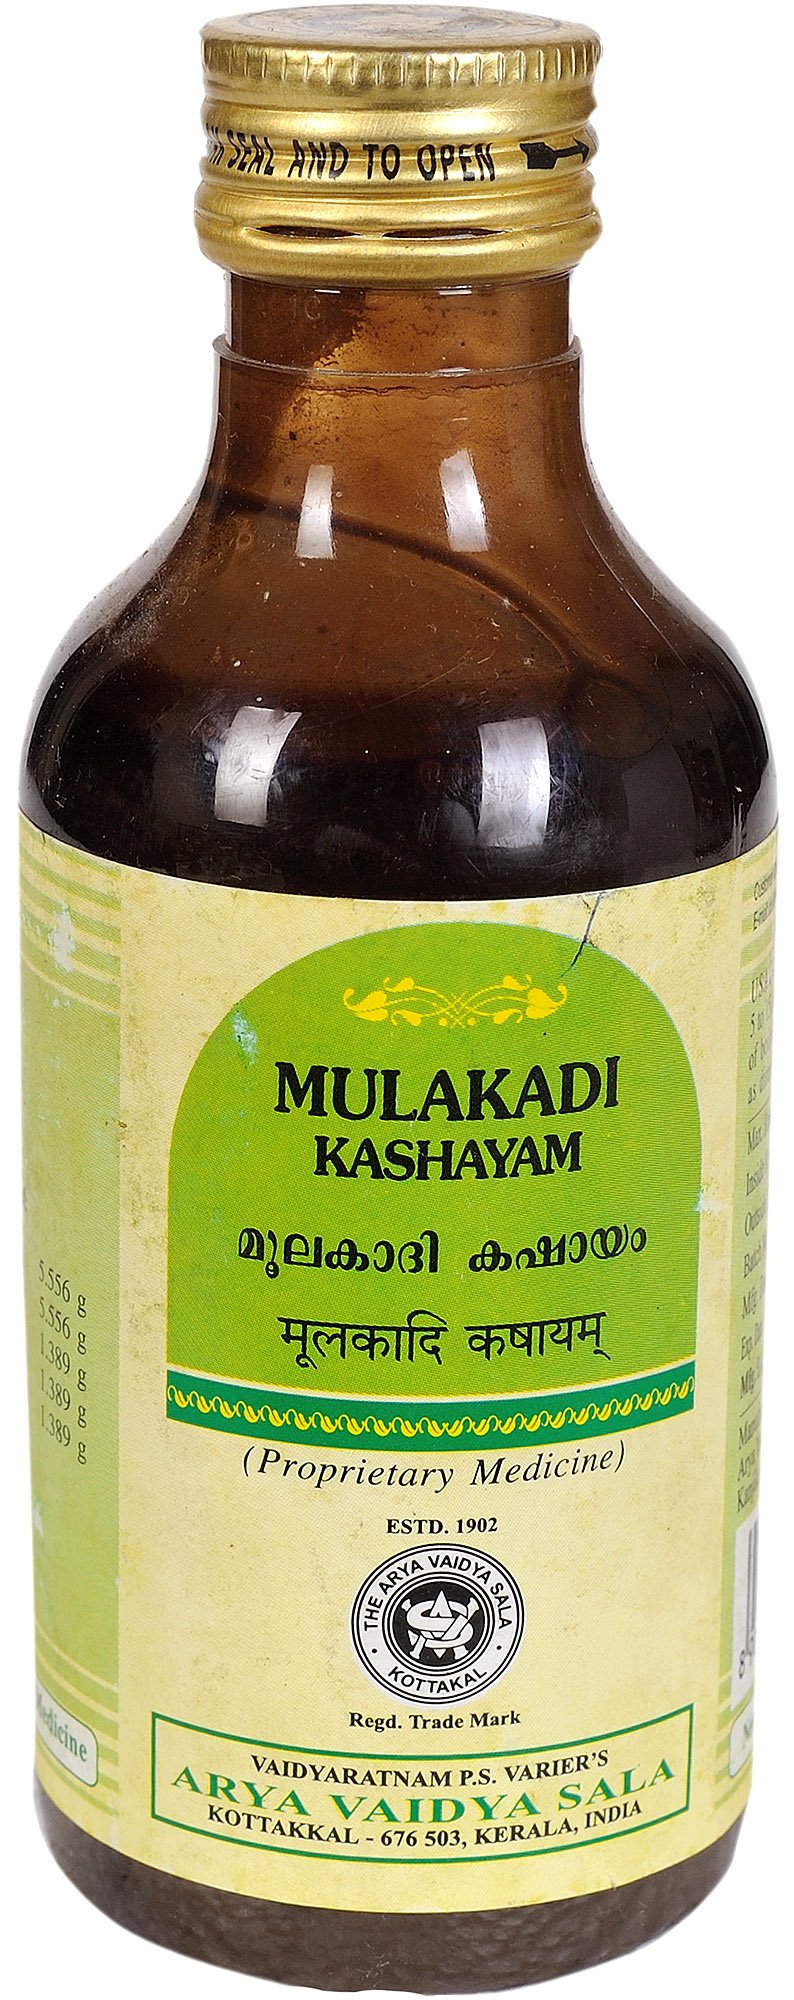 Mulakadi Kashayam - book cover